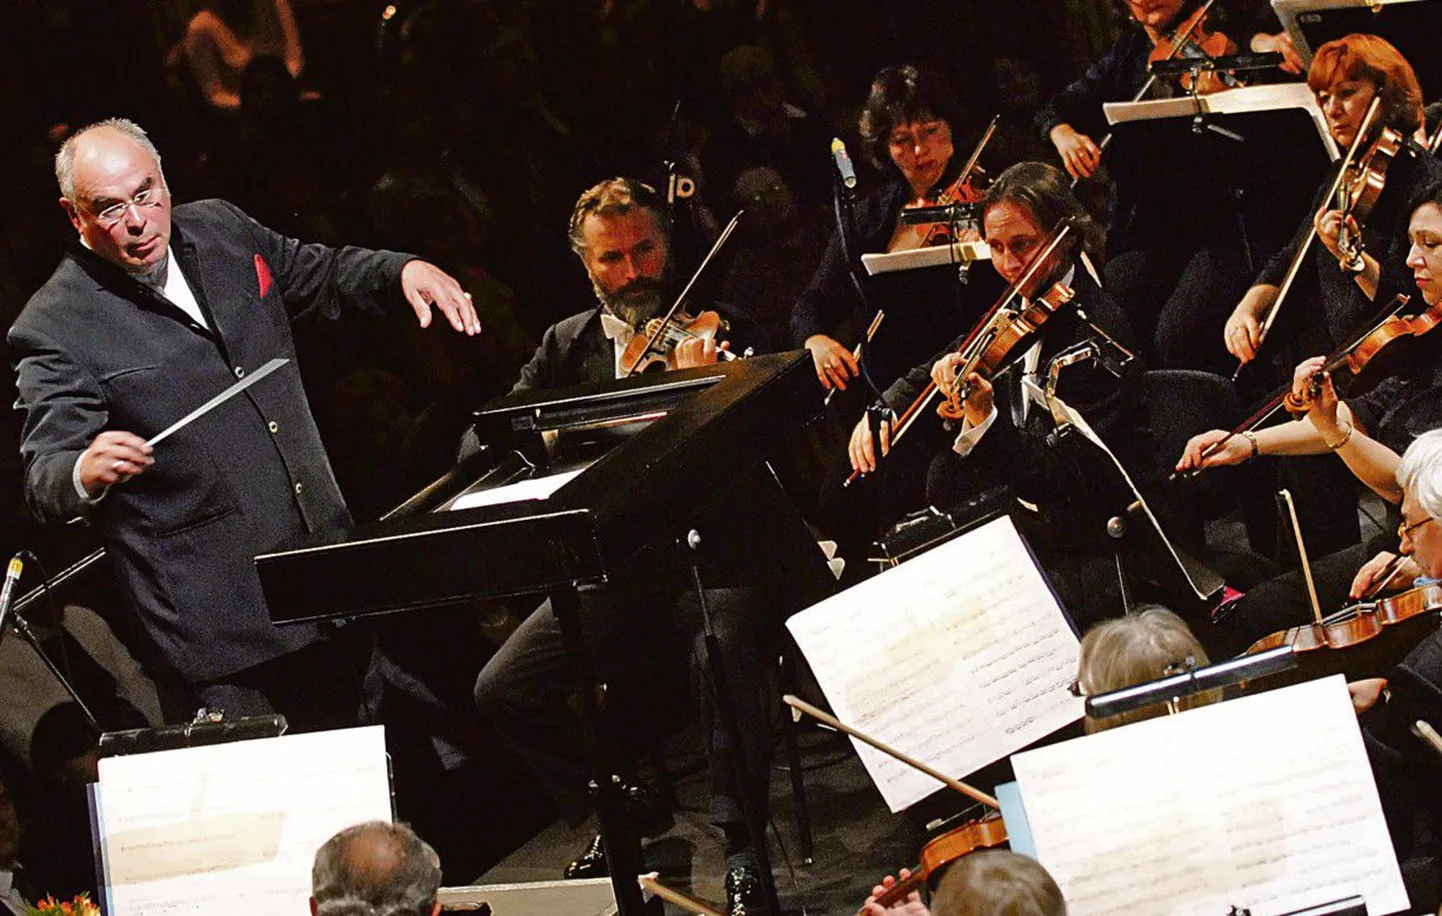 Знаменитый эстонский дирижер Эри Клас (слева) во время премьеры Симфонической фантазии голландского композитора  Хенка де Влиегера на темы из оперы Рихарда Вагнера «Мейстерзингеры» на сцене театра Новая Опера 1 октября 2006 года.